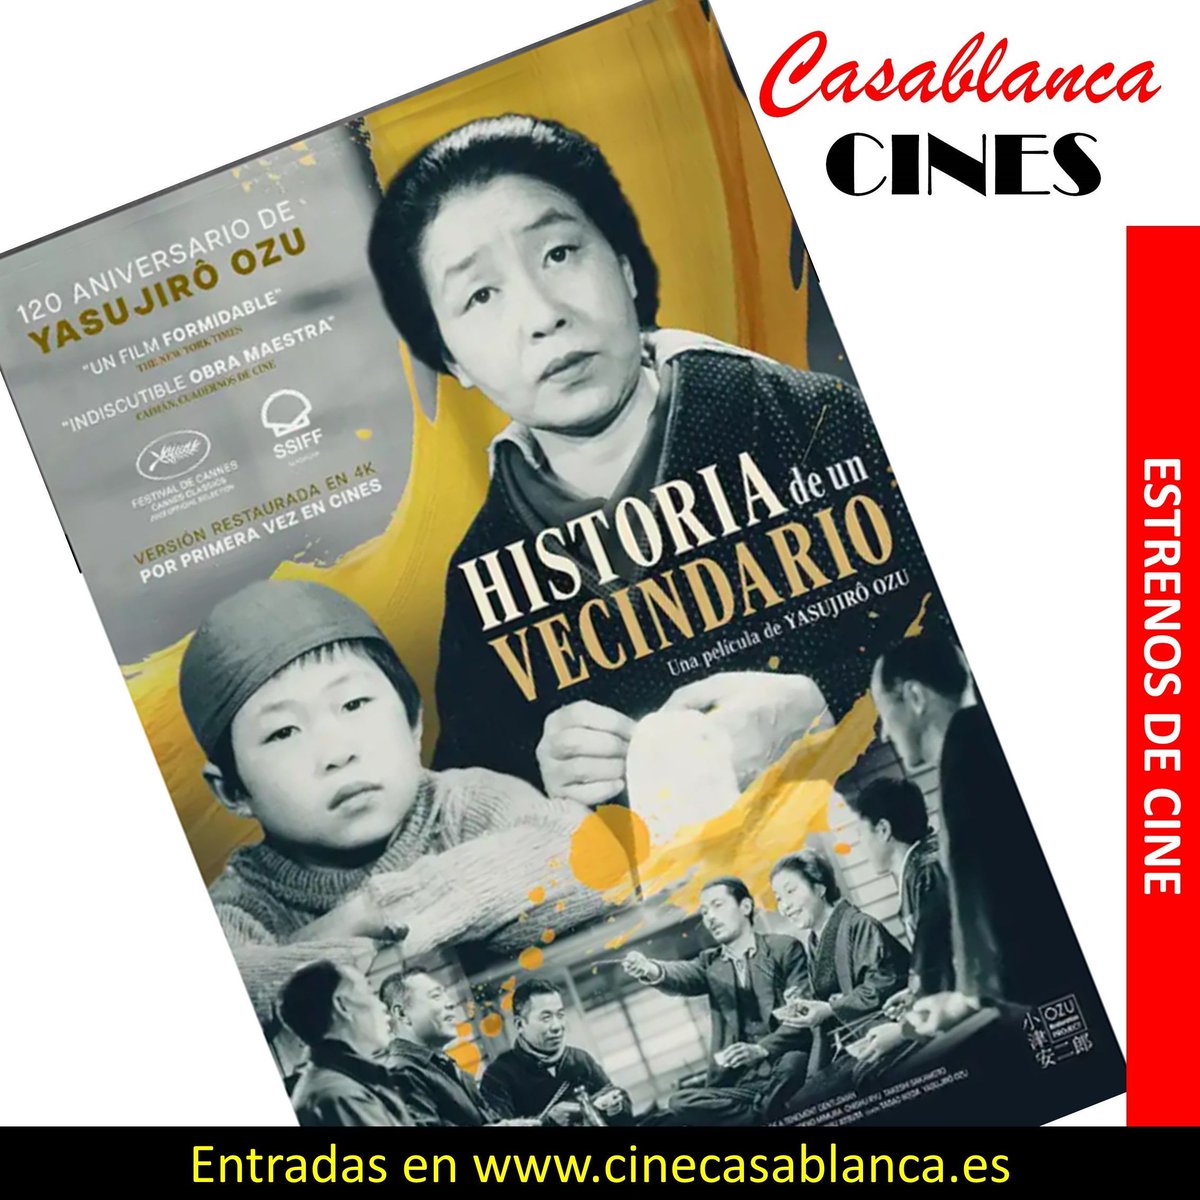 Celebrando el 120 aniversario del maestro Yasujirō Ozu y su HISTORIA DE UN  VECINDARIO

Sesiones y entradas online en cinecasablanca.es 

#CineCasablanca #Valladolid #YasujiroOzu #Historiadeunvecindario